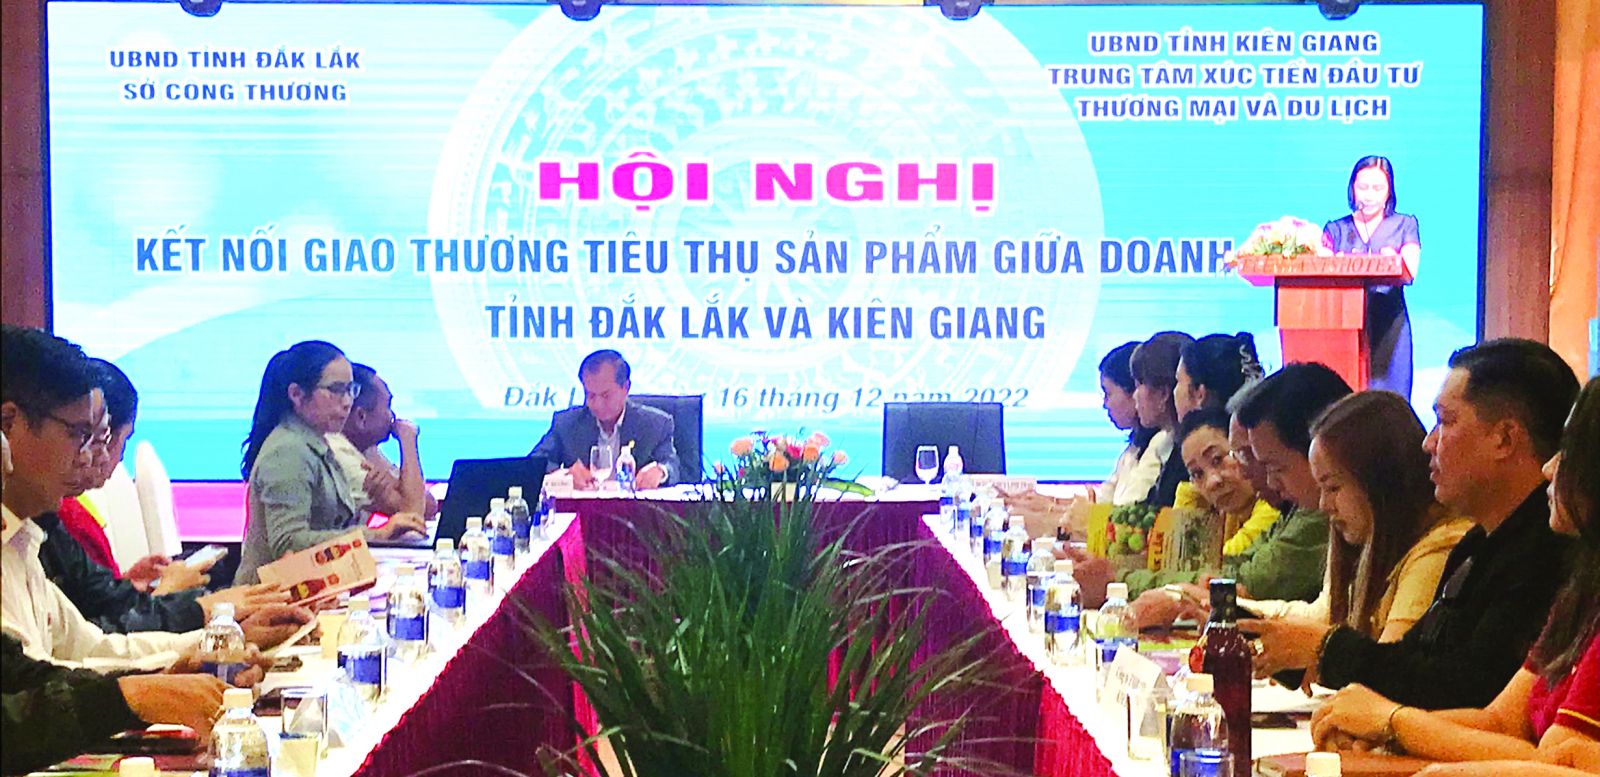  Tại Hội nghị kết nối giao thương giữa Kiên Giang và Đắc Lắk có 25 doanh nghiệp ký kết ghi nhớ và hợp đồng giao thương.